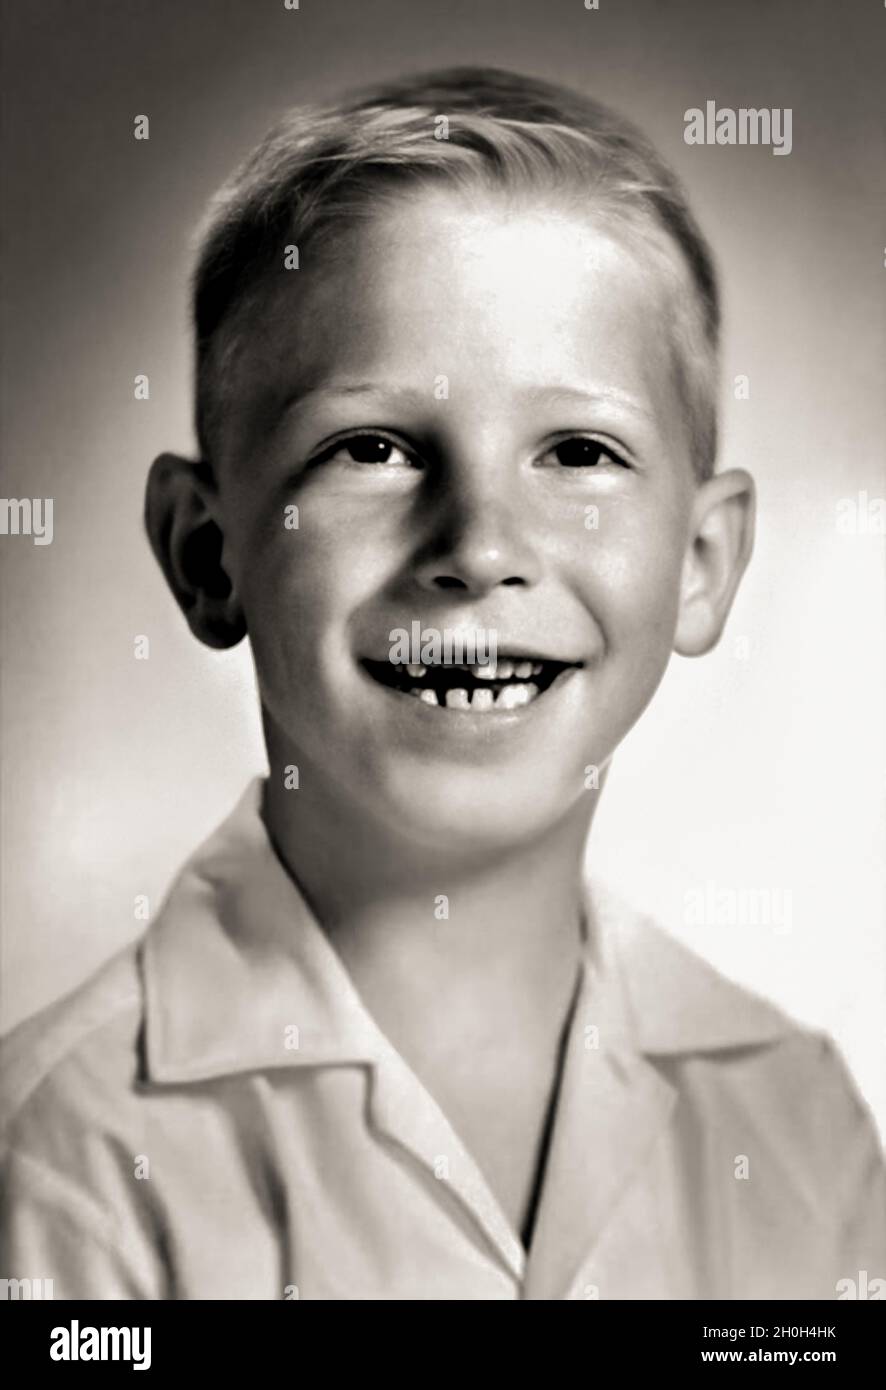 1962 CA, Etats-Unis : le célèbre BILL GATES ( bo​rn à Seattle, 28 octobre 1955​ ) quand était un jeune garçon de 7 ans .Photographe inconnu .Magnat américain , investisseur et propriétaire de médias fondateur de WINDOWS MICROSOFT Company .Photographe inconnu .- INFORMATICA - INFORMATICO - INFORMATIQUE - INFORMATIQUE - INVENTORE - INVENTEUR - HISTOIRE - FOTO STORICHE - TYCOON - personalità da bambino bambini da giovane - personnalité personnalités quand était jeune - INFANZIA - ENFANCE - BAMBINO - BAMBINI - ENFANTS - ENFANT --- ARCHIVIO GBB Banque D'Images